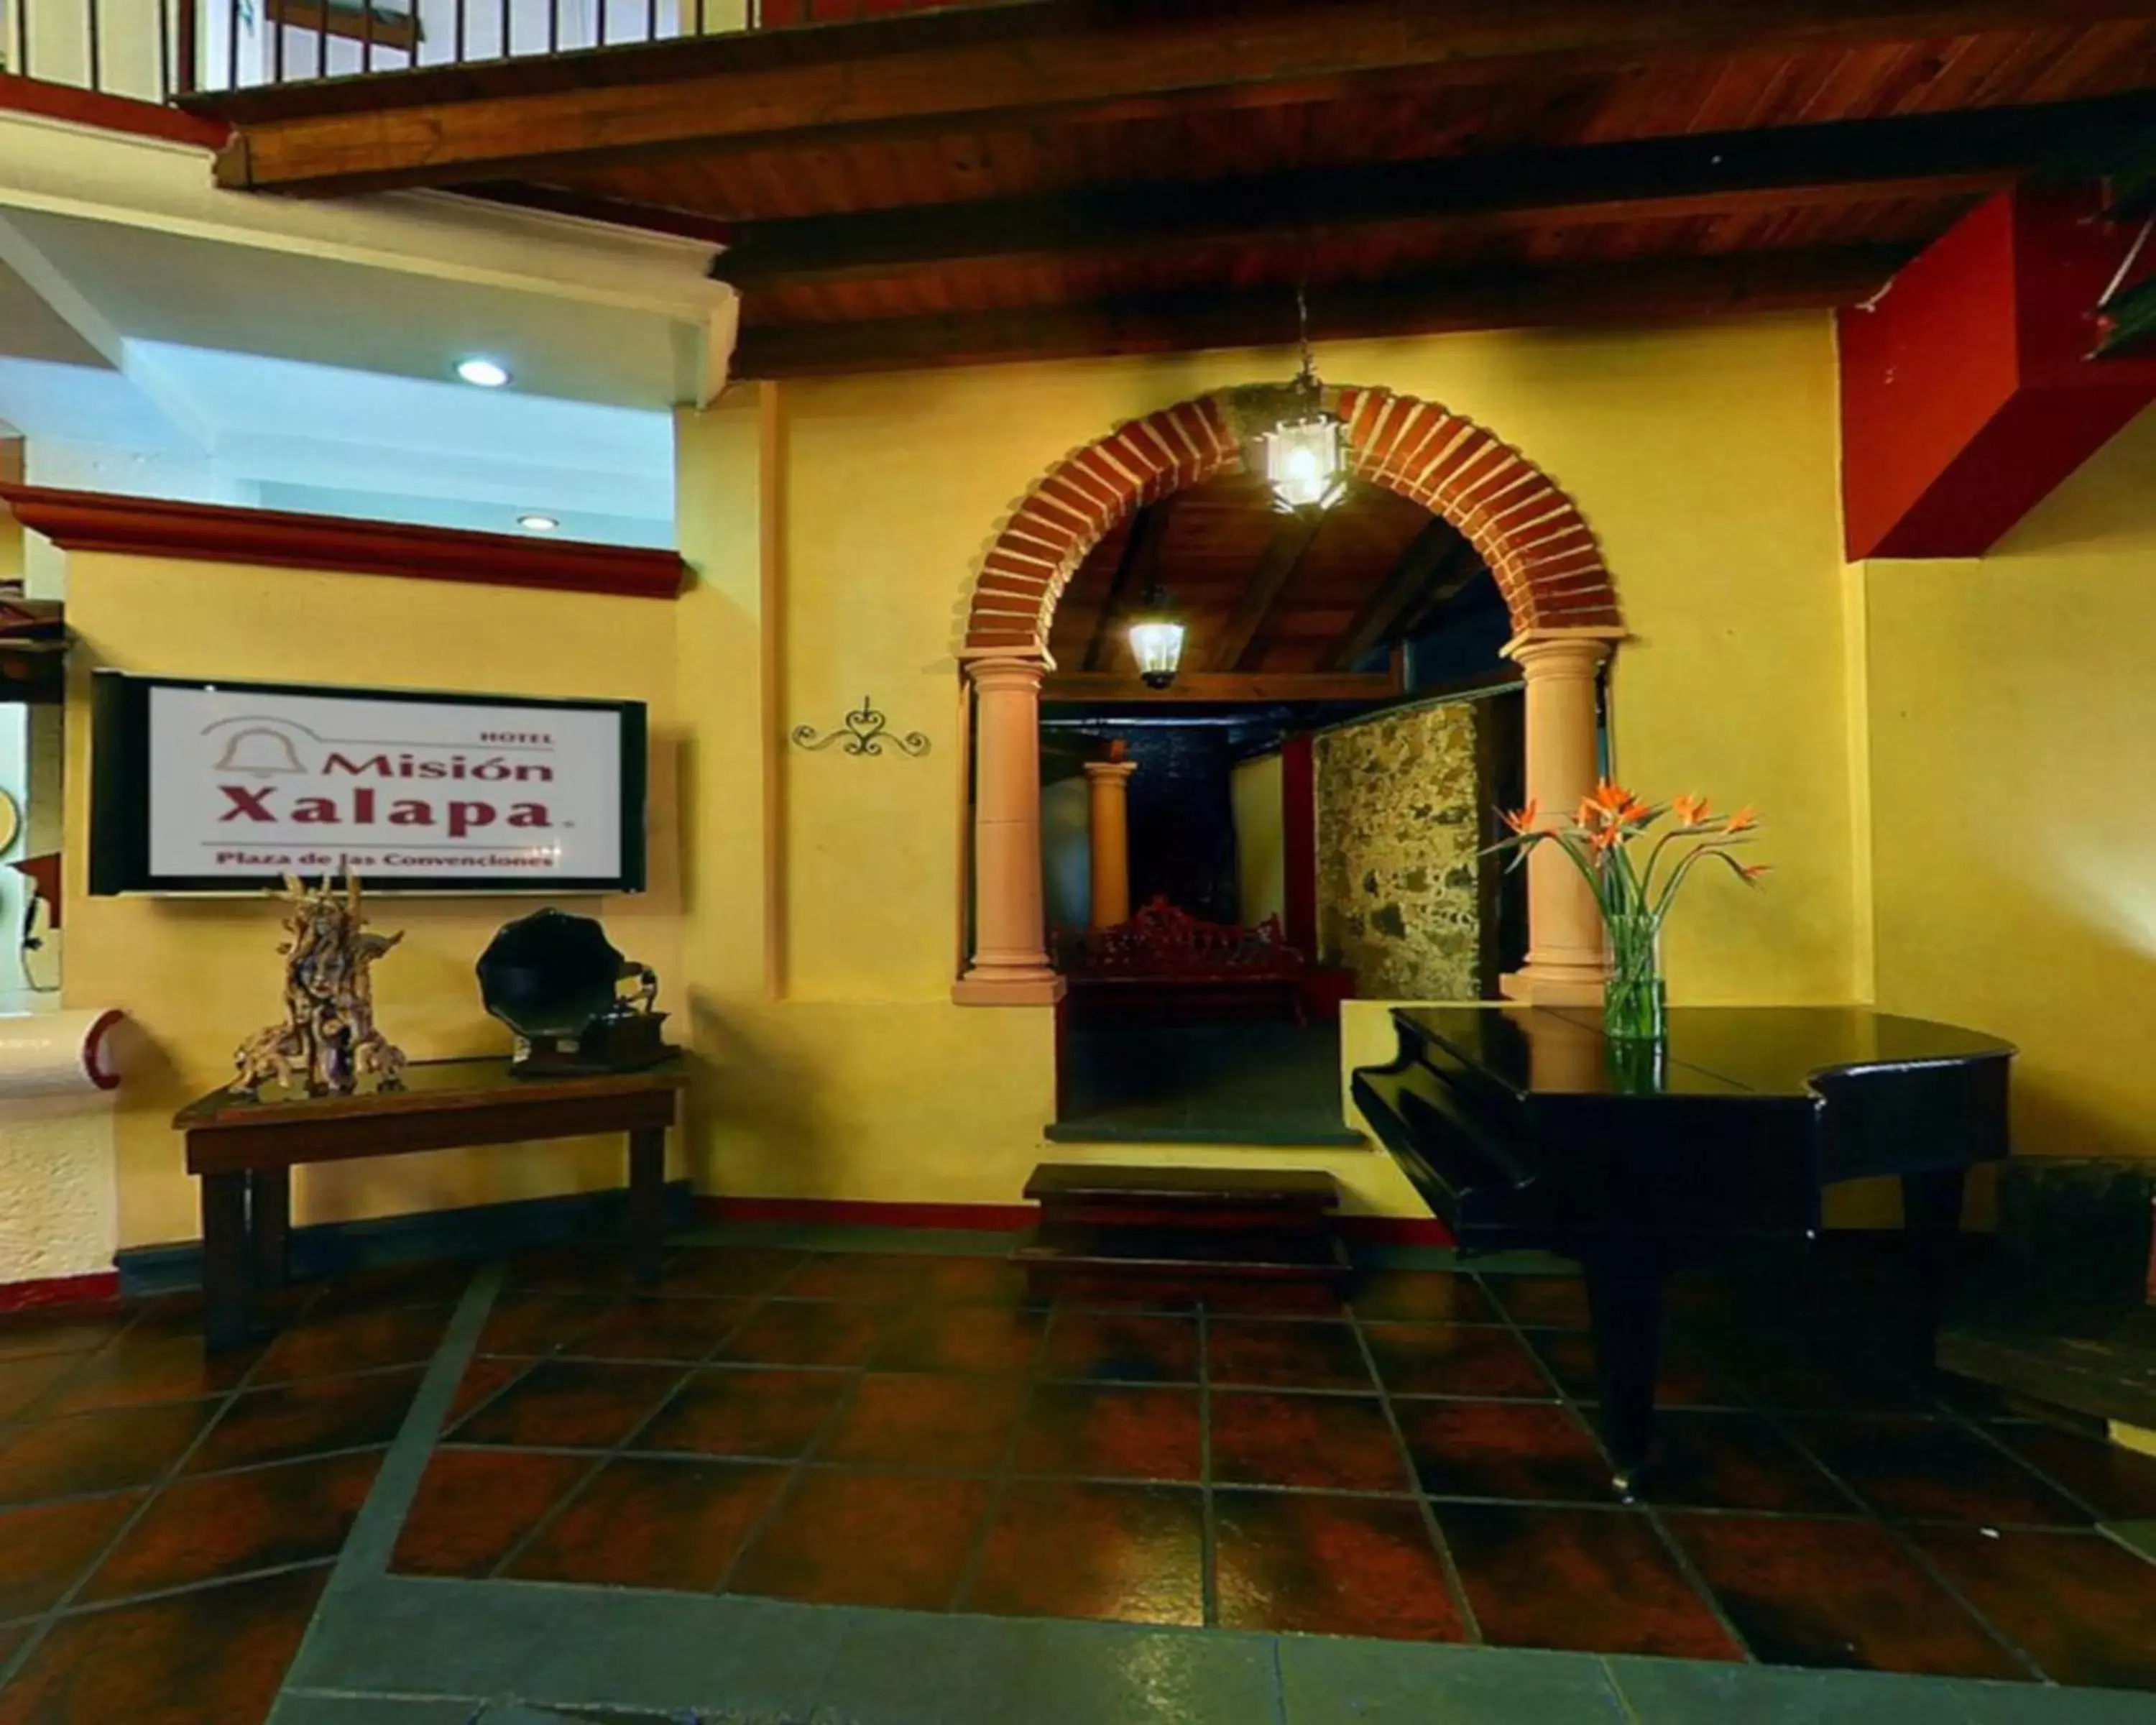 Lobby or reception, Lobby/Reception in Mision Xalapa Plaza de las Convenciones